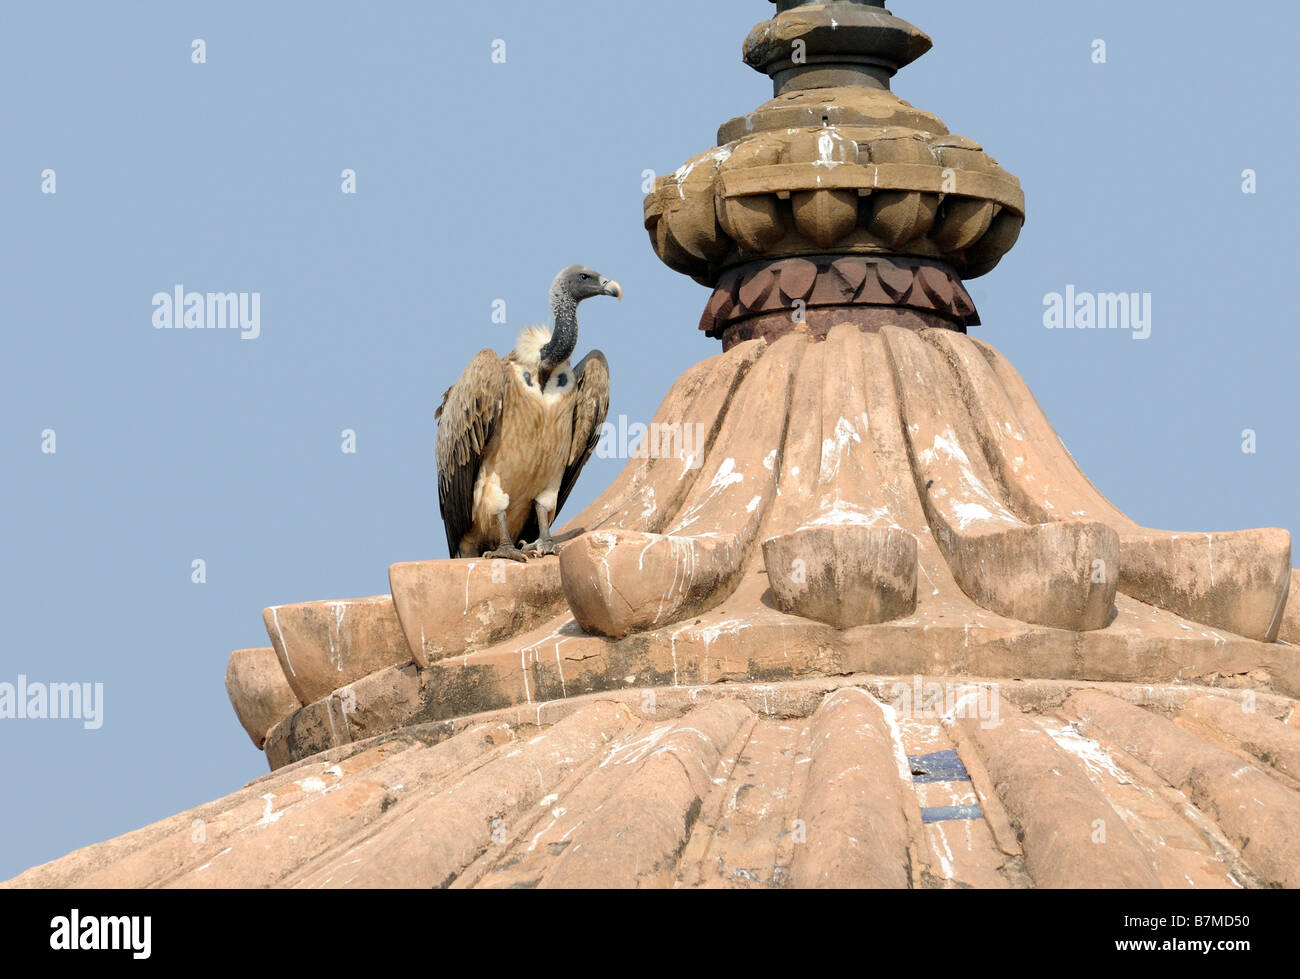 Eine indische Geier (abgeschottet Indicus) hockt Ornamentik Representinhg eine Lotusblüte auf dem Dach des Sandsteins Jahangir Mahal Stockfoto